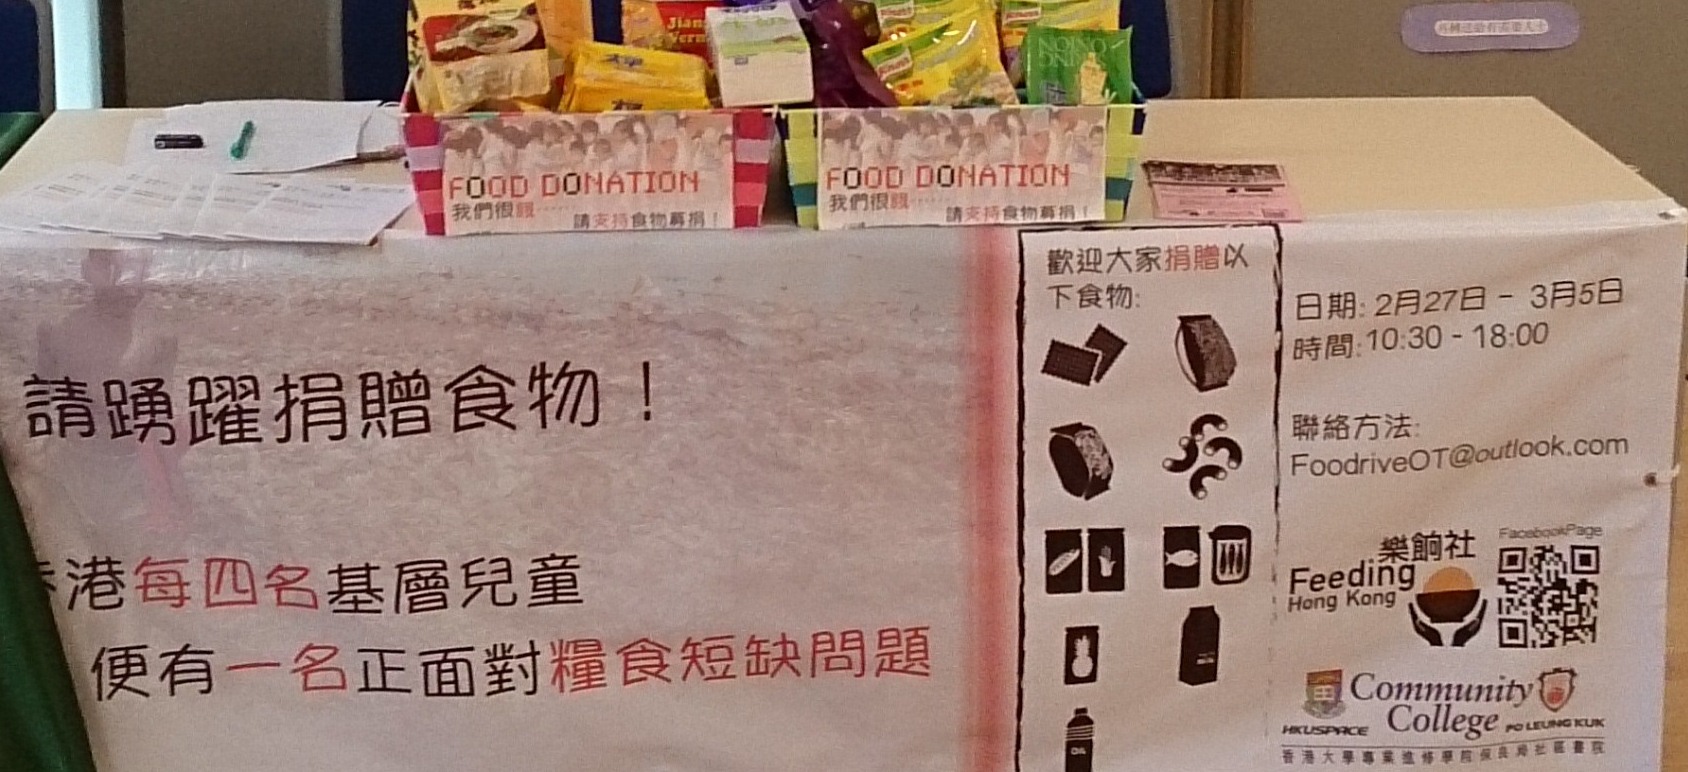 食物募捐活動 2014 - Photo - 31